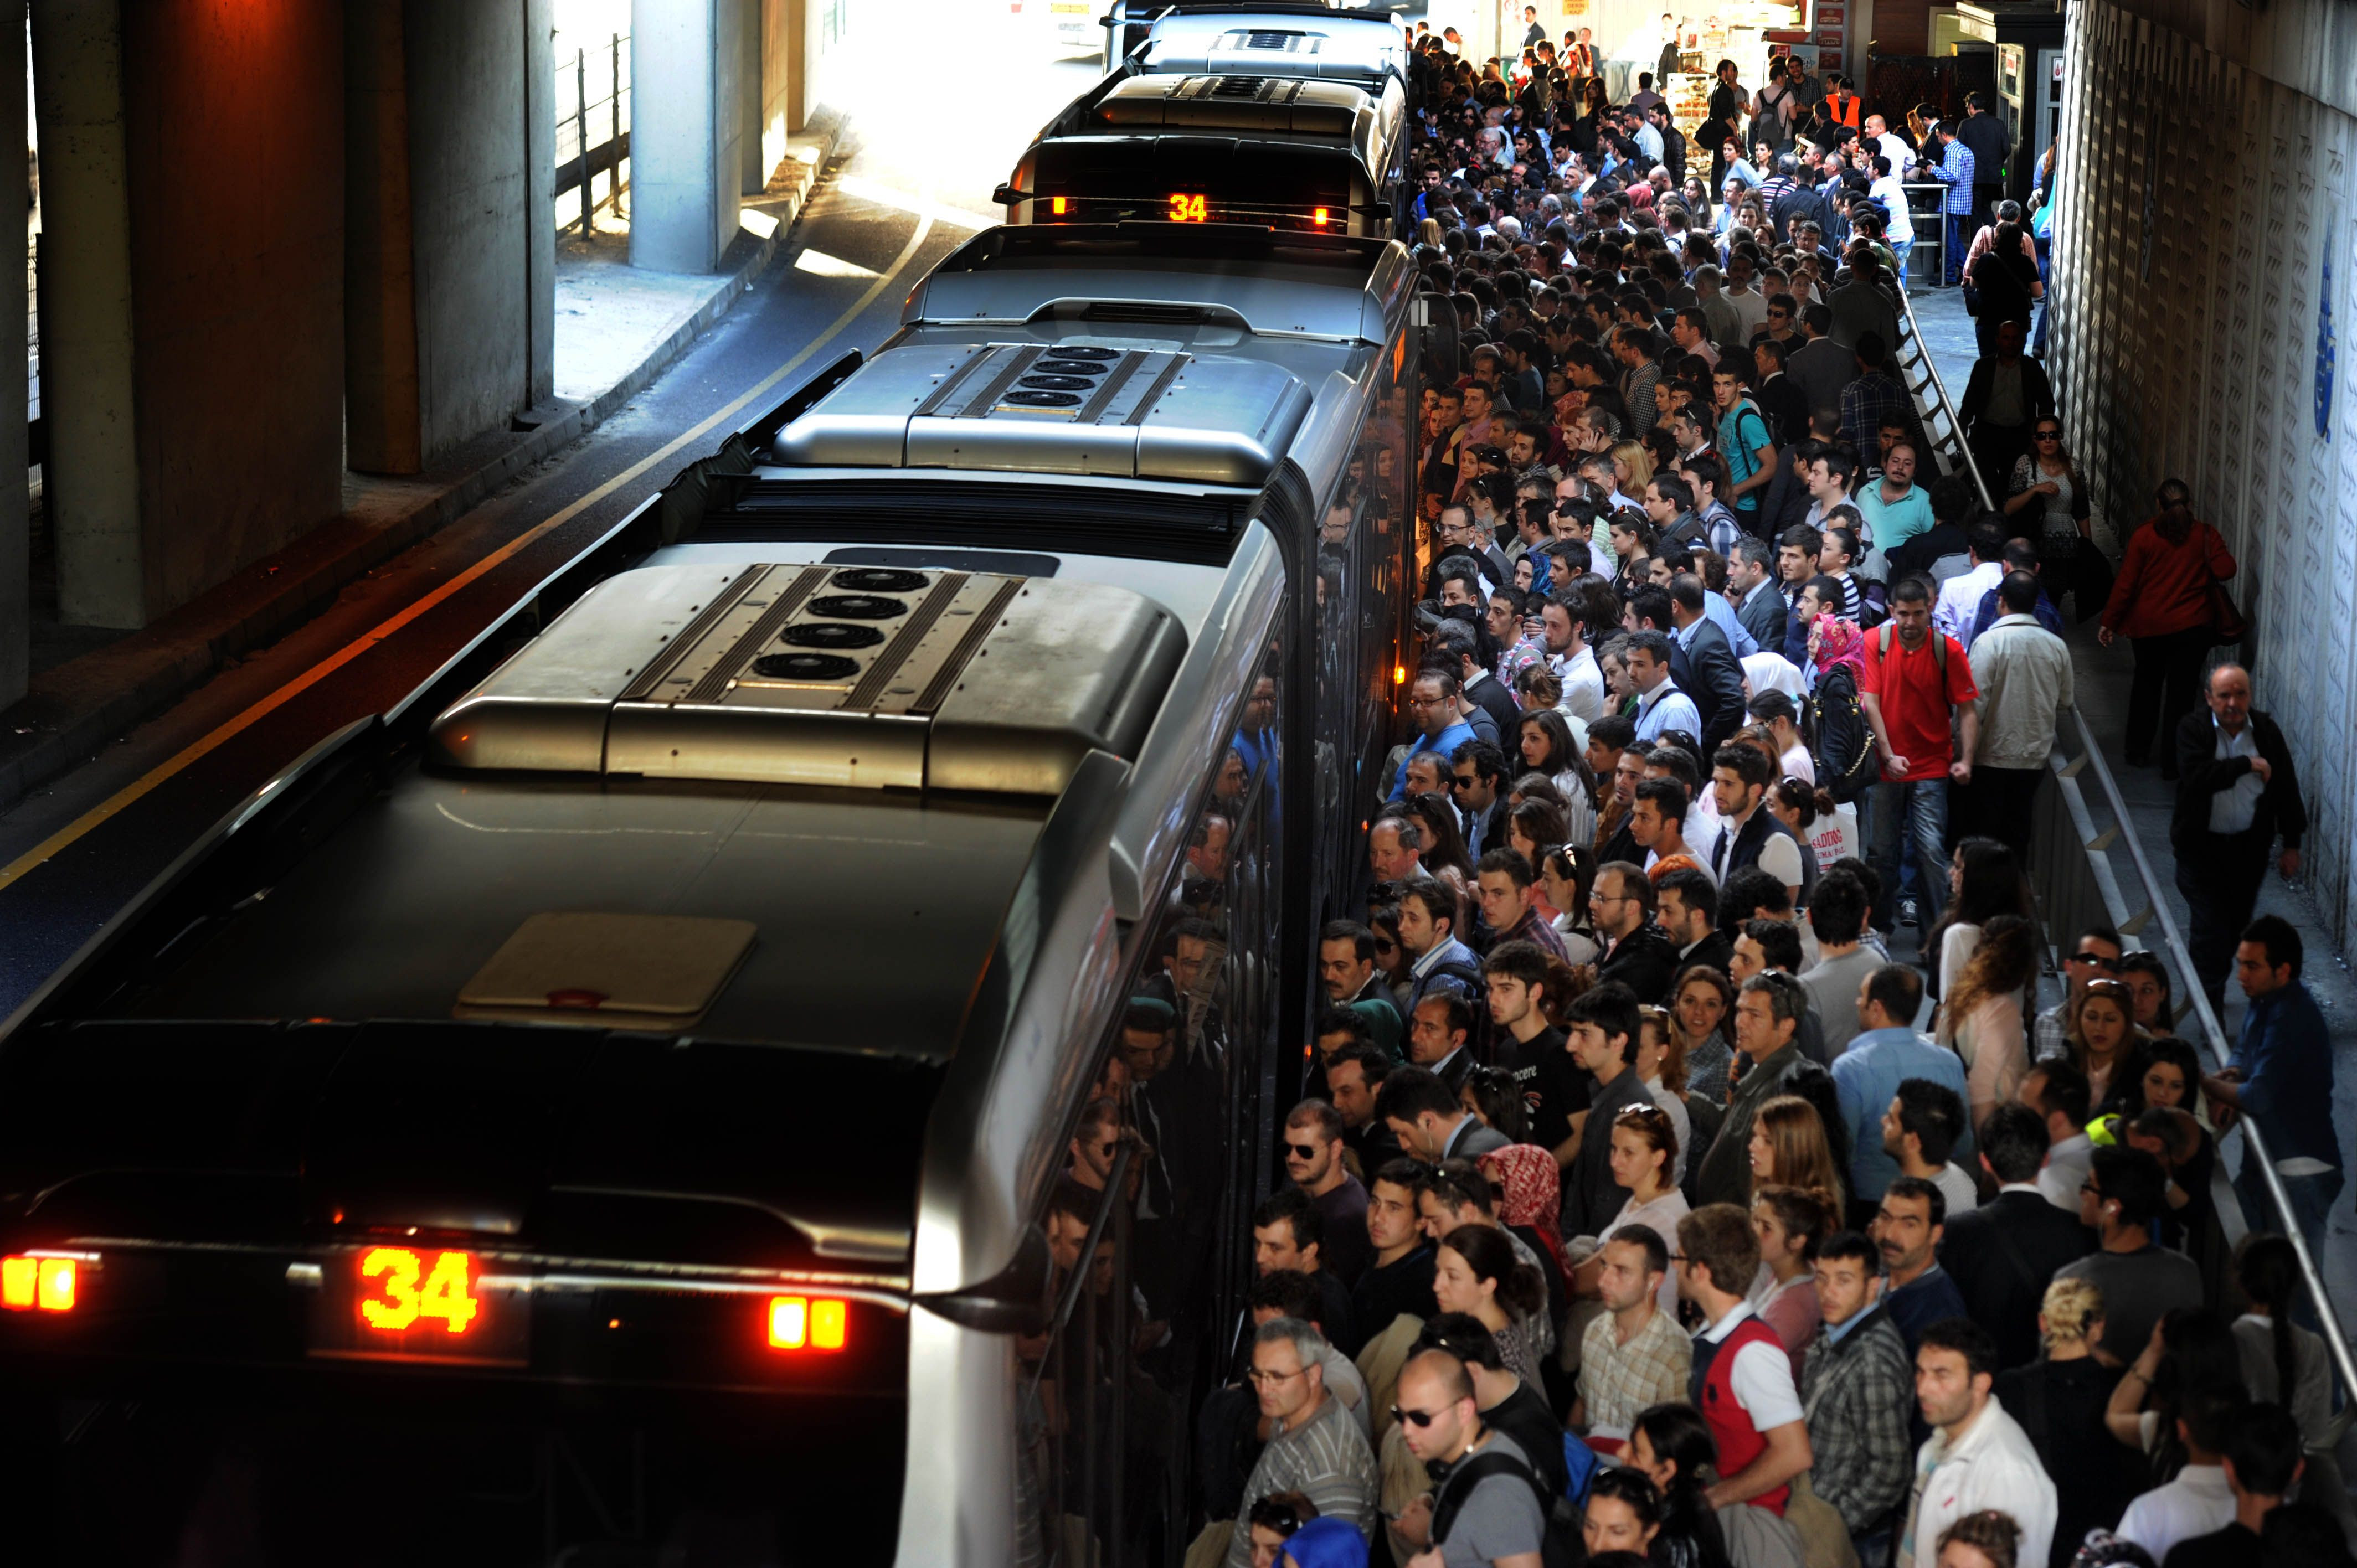 İstanbul'da 15 ve 16 Temmuz'da toplu ulaşım ücretsiz